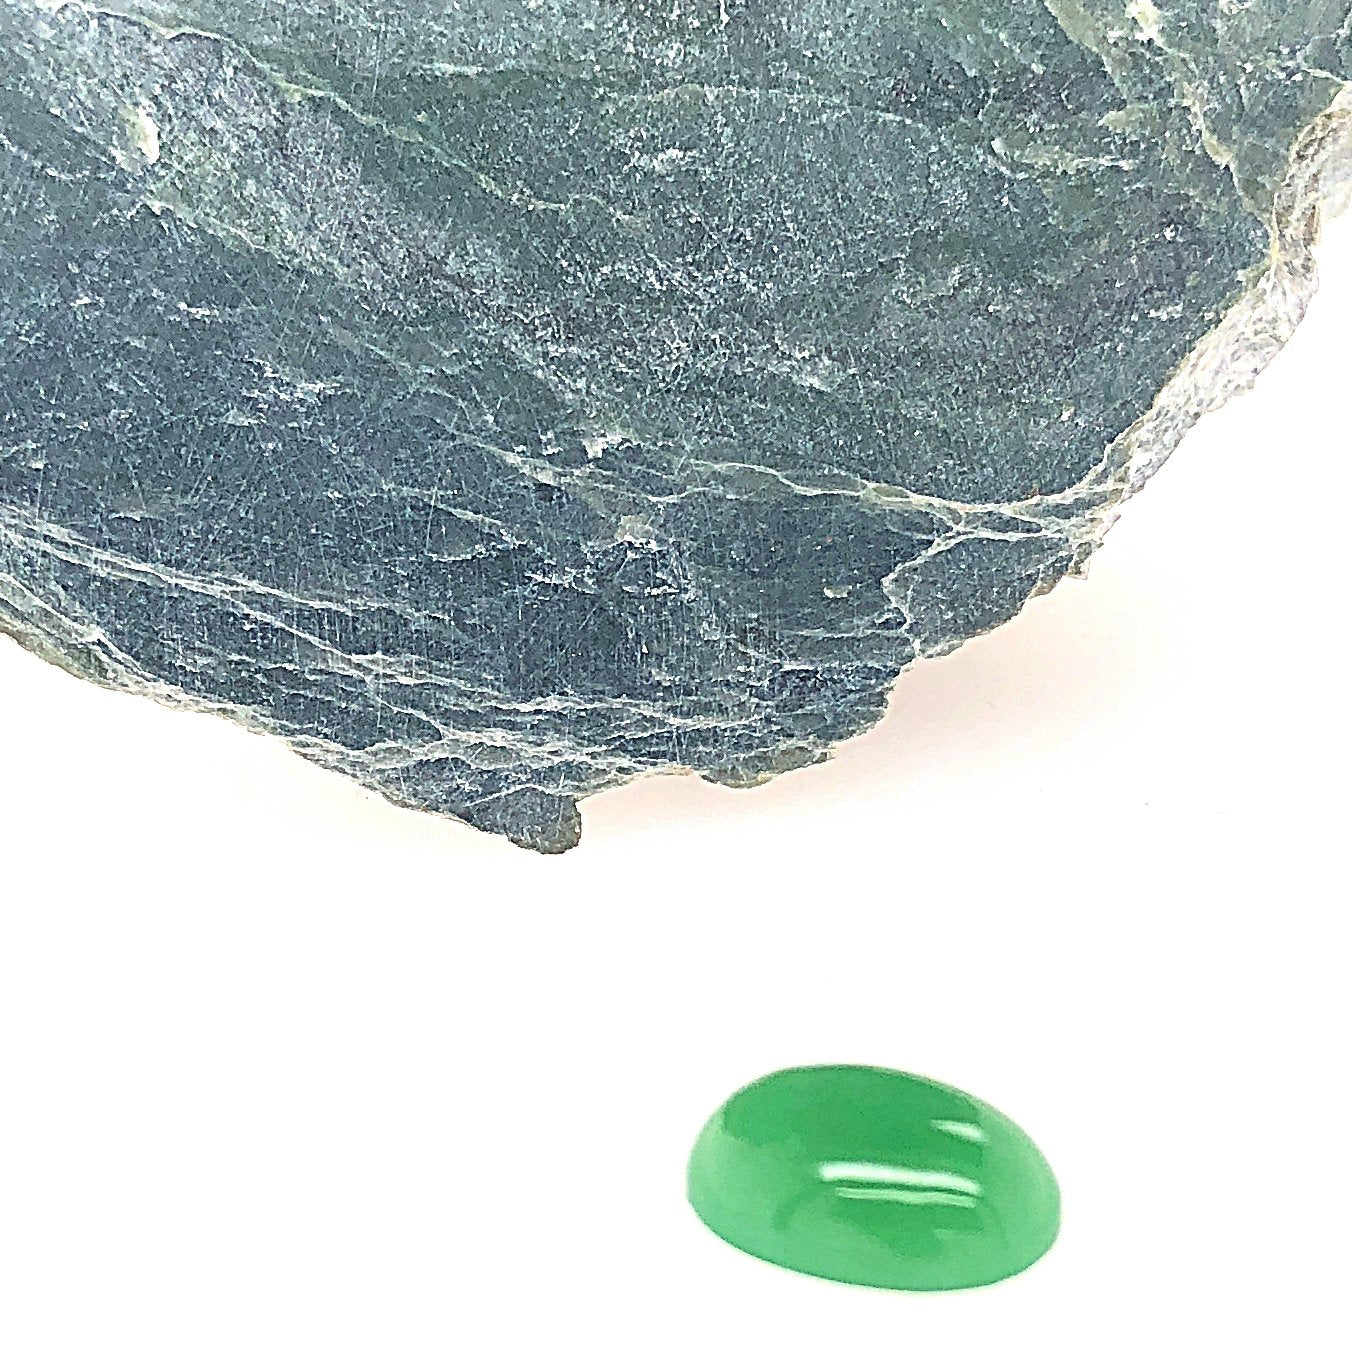 material: jade